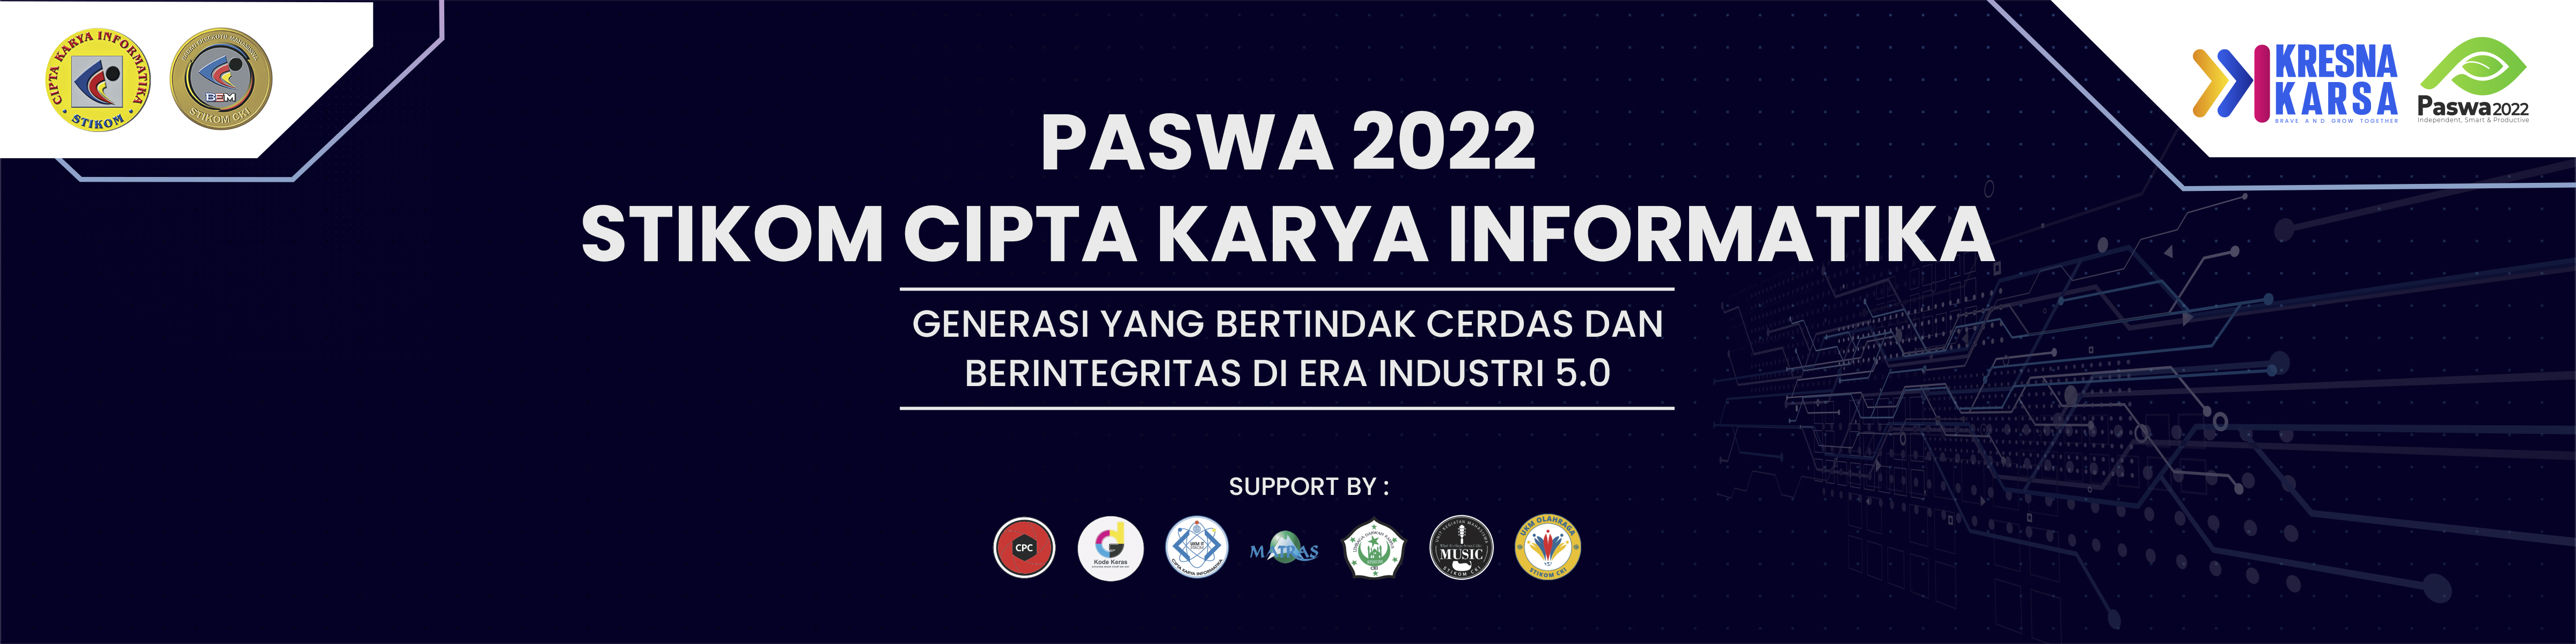 PASWA 2022